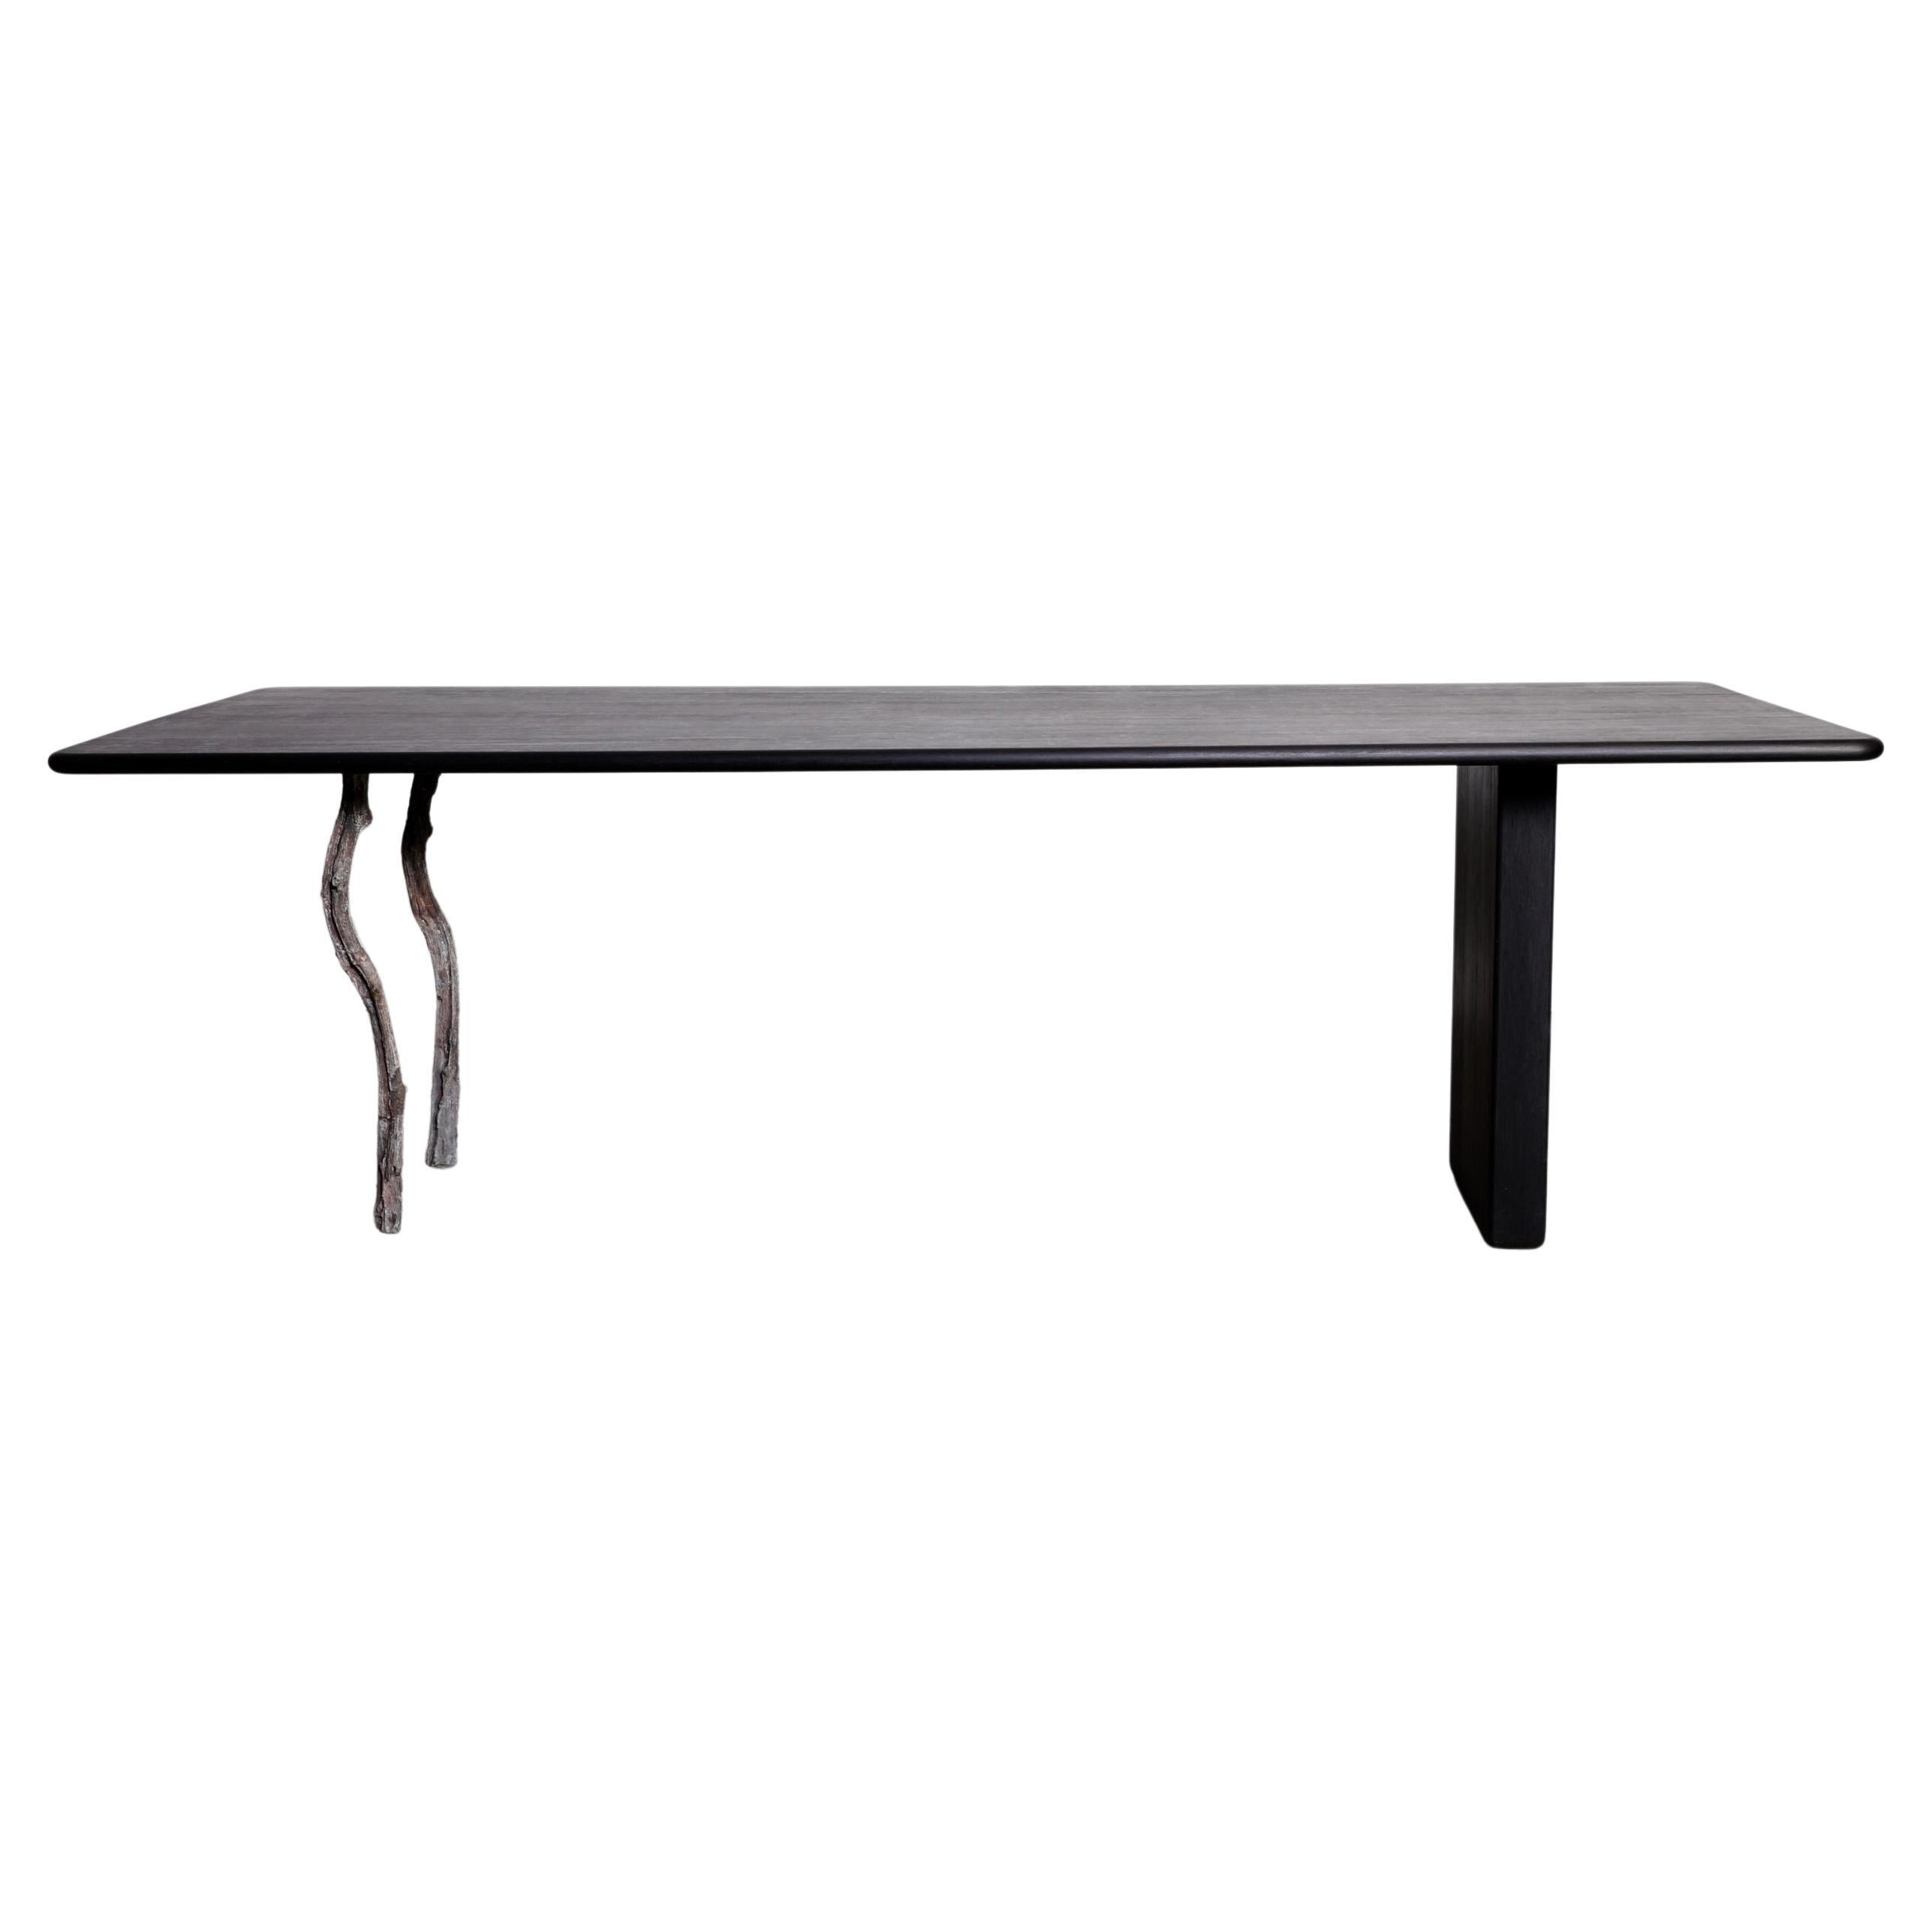 Modern Black Oblong Dining Table, Treebone by Jesse Sanderson for WDSTCK